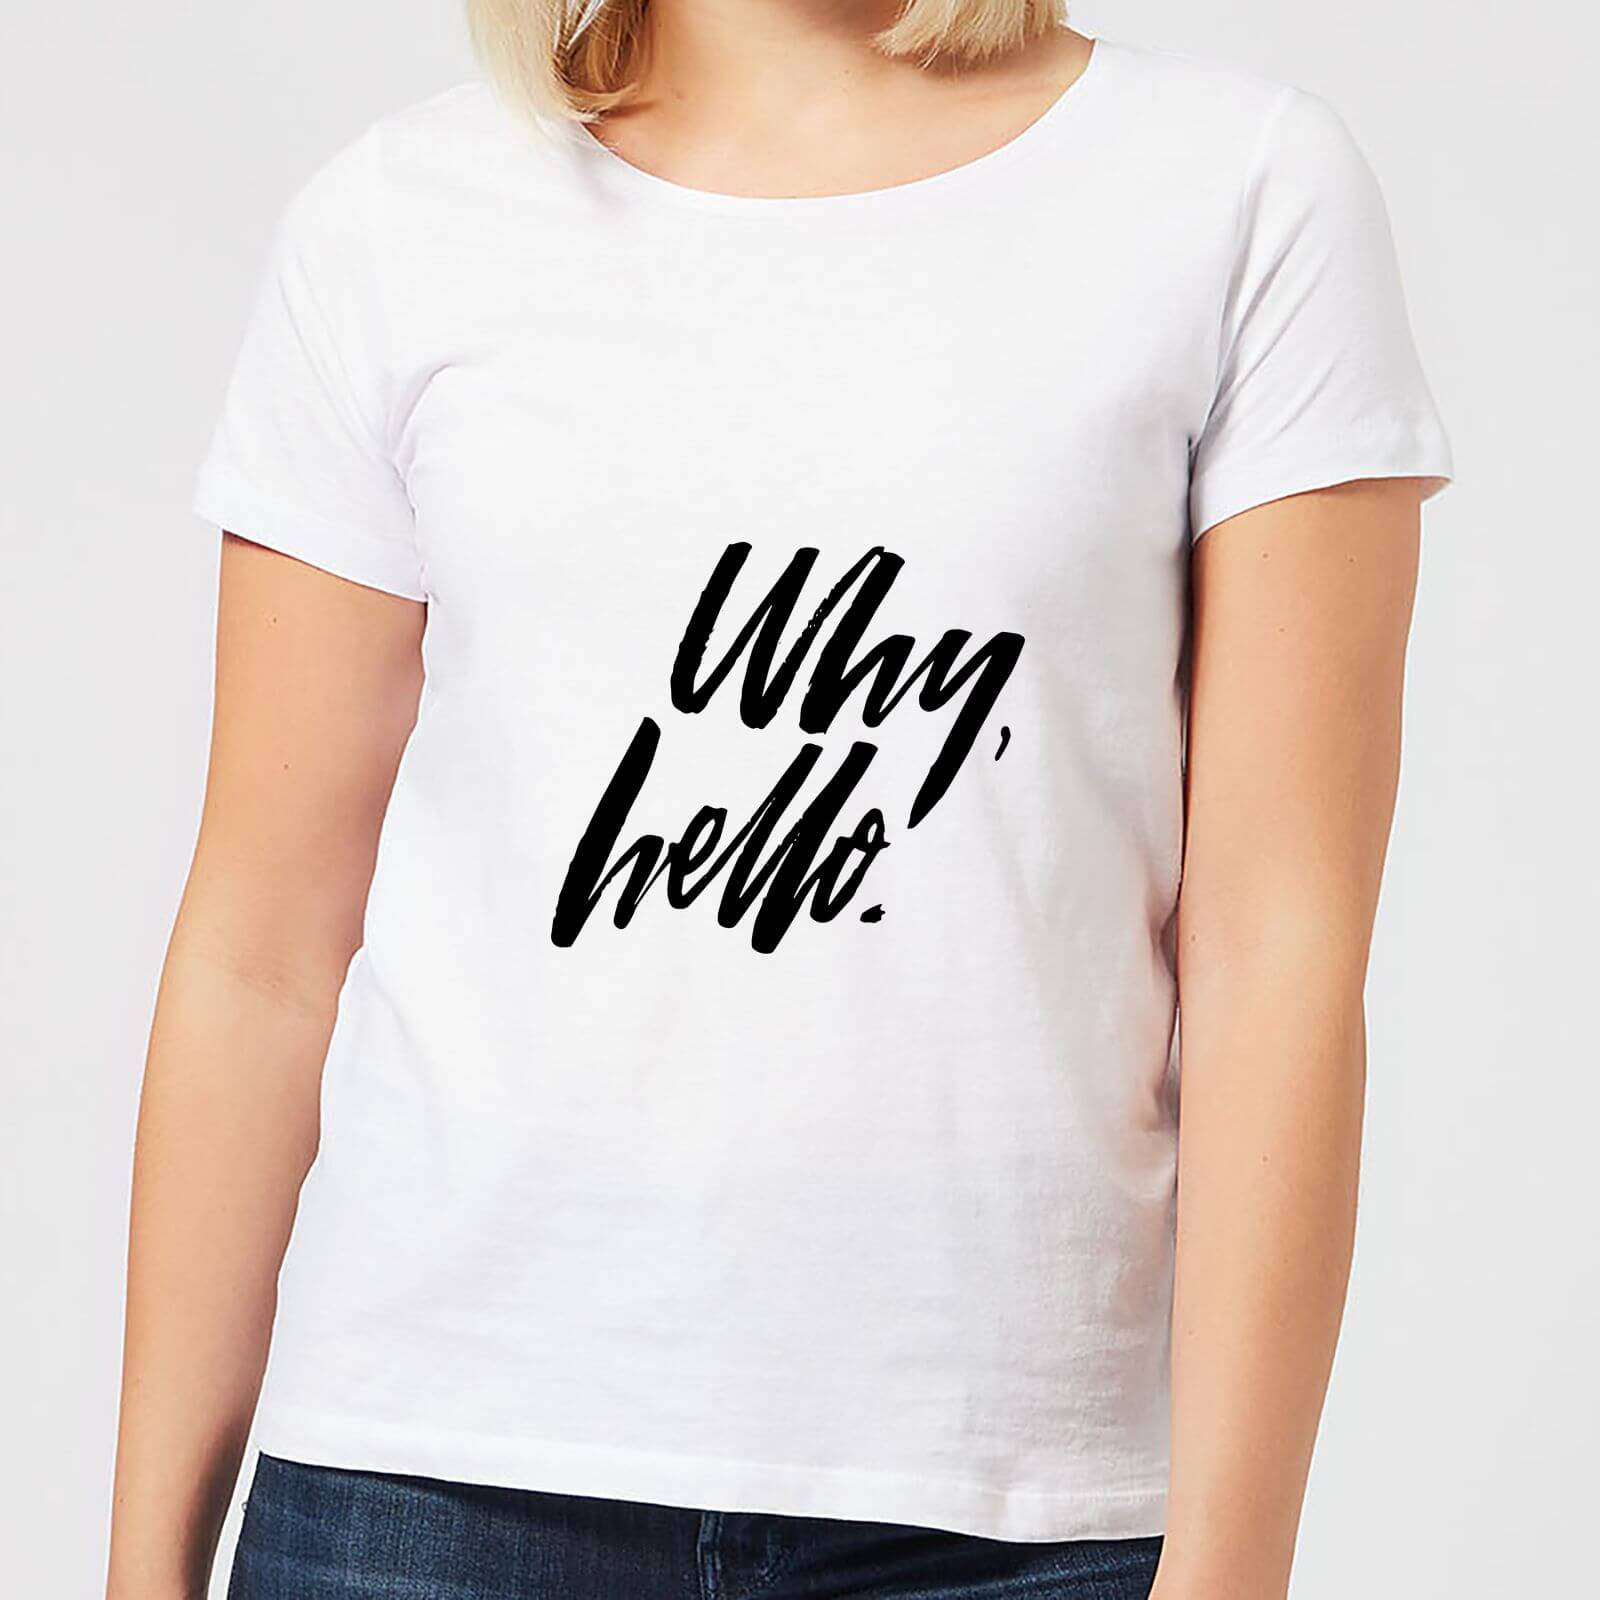 Why, Hello. Women's T-Shirt - White - S - White